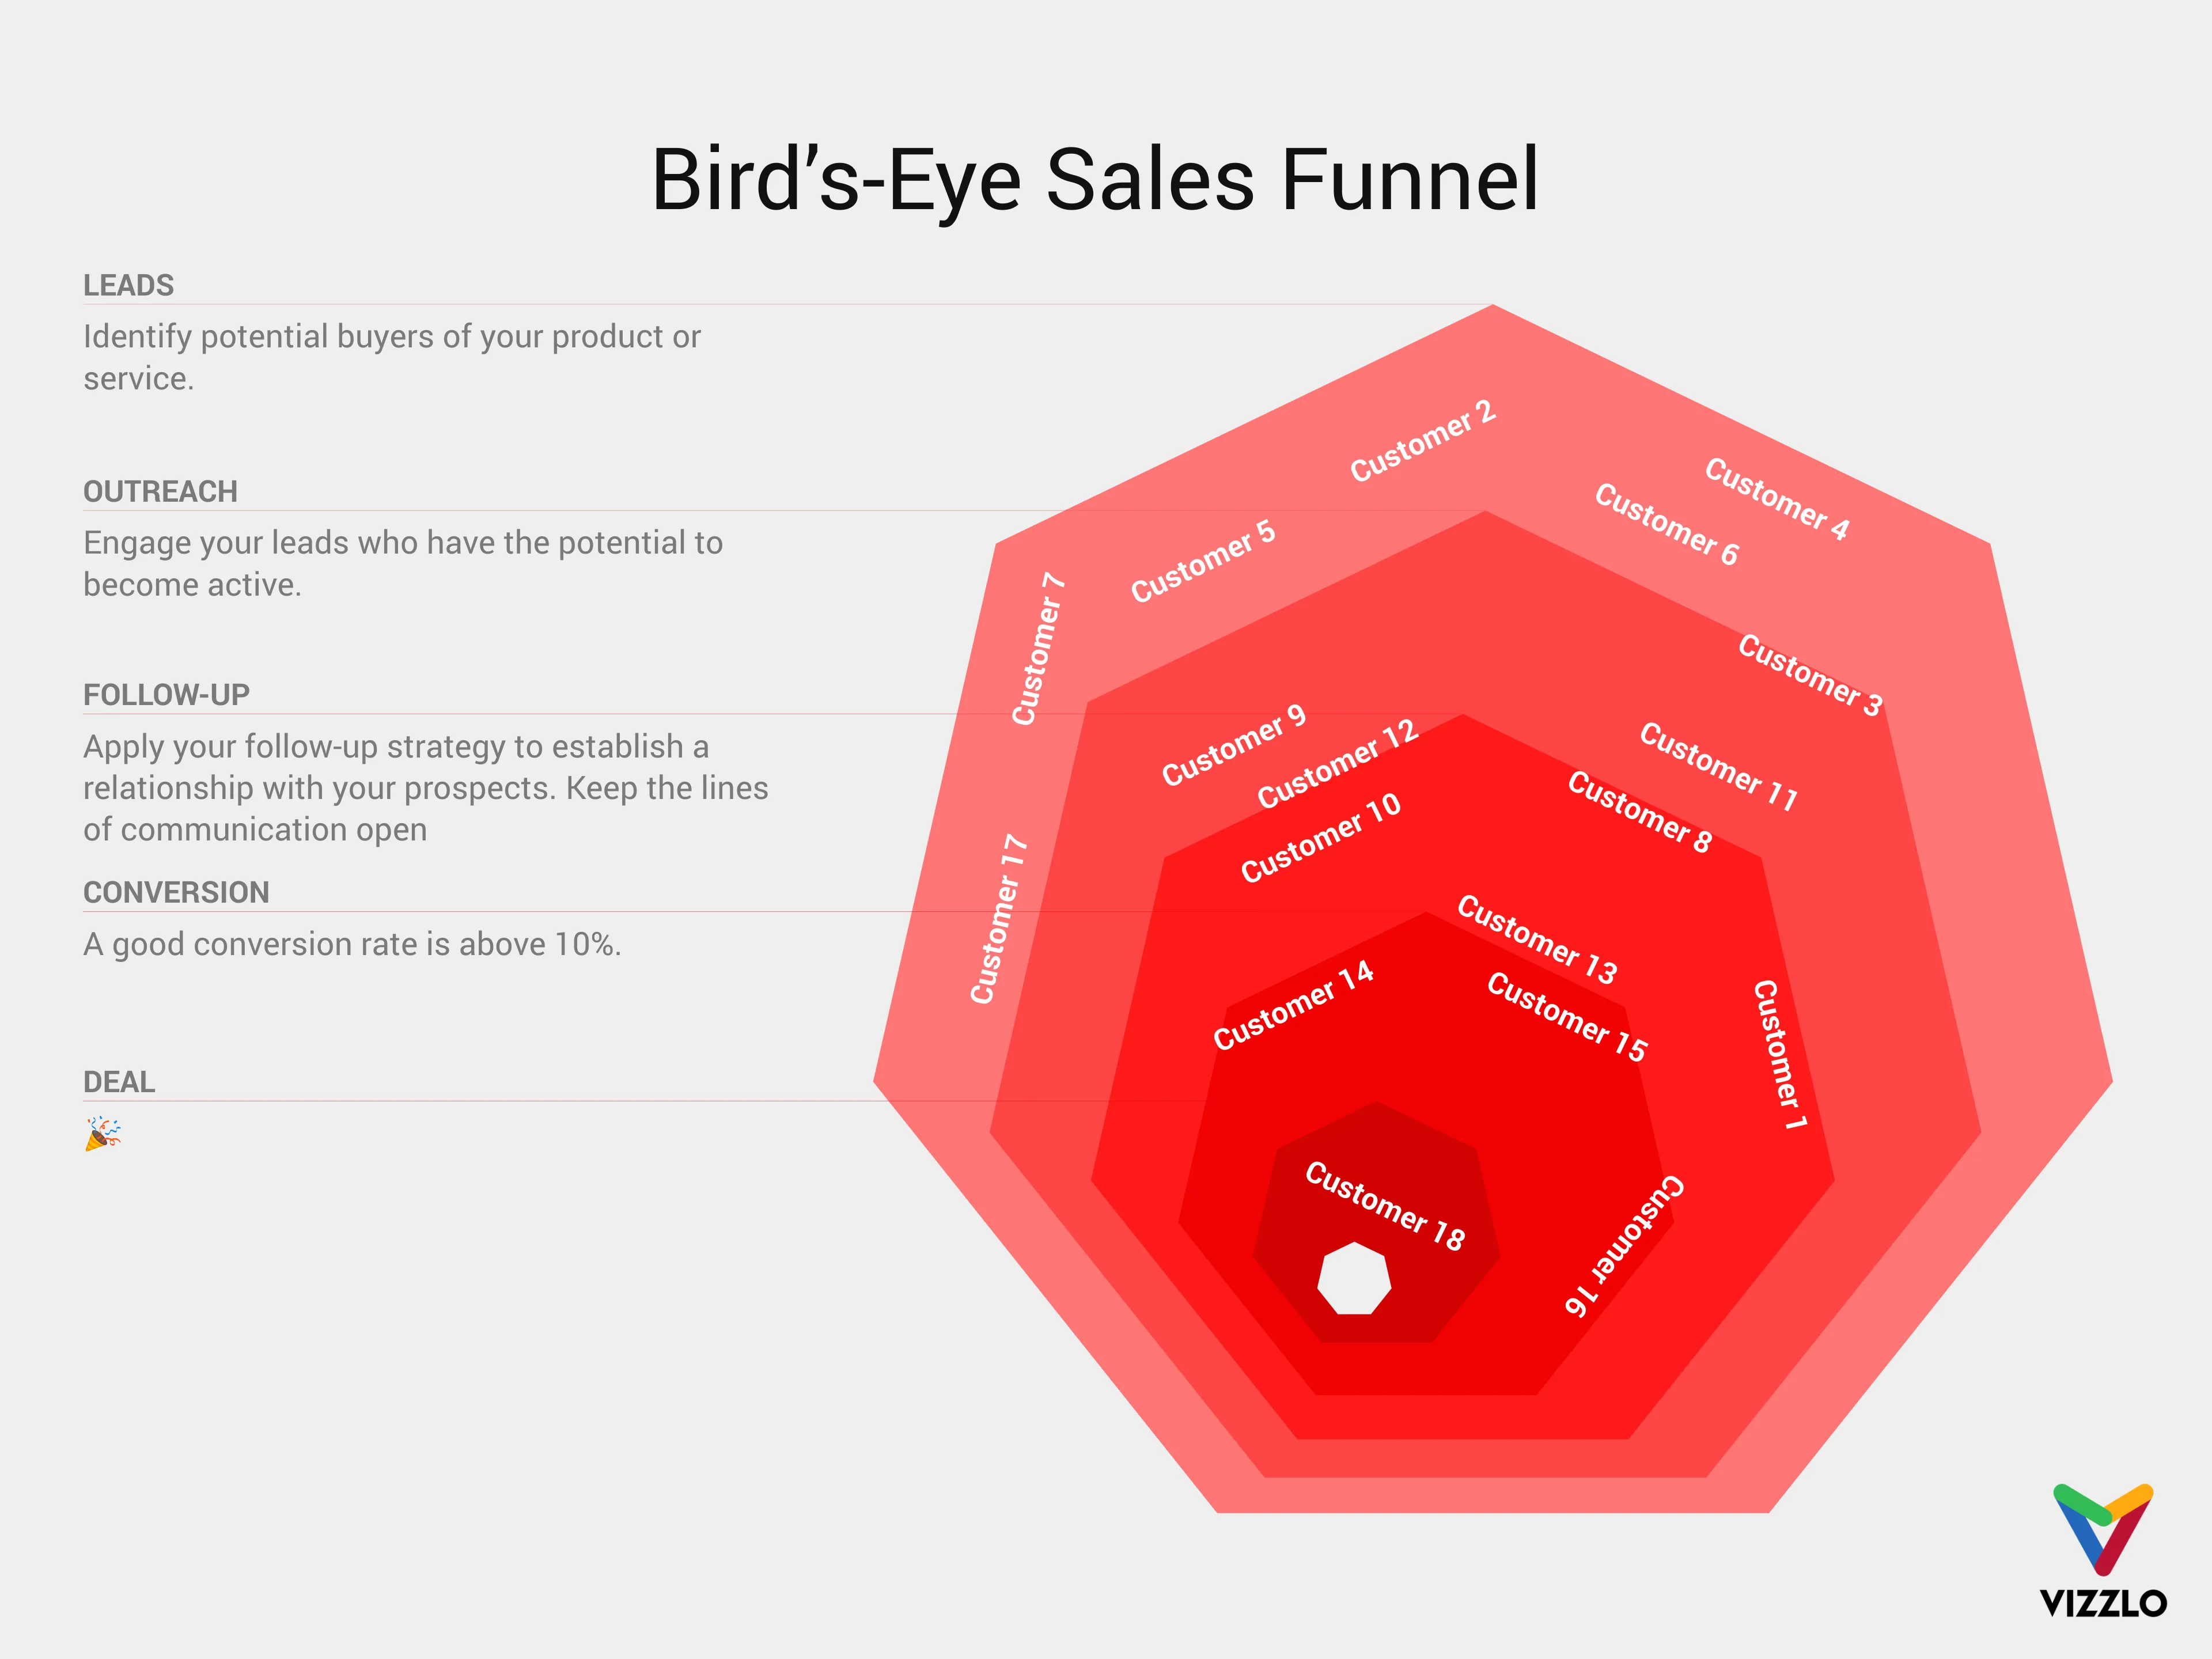 Bird’s-Eye Funnel  example: Bird’s-Eye Funnel  Examples